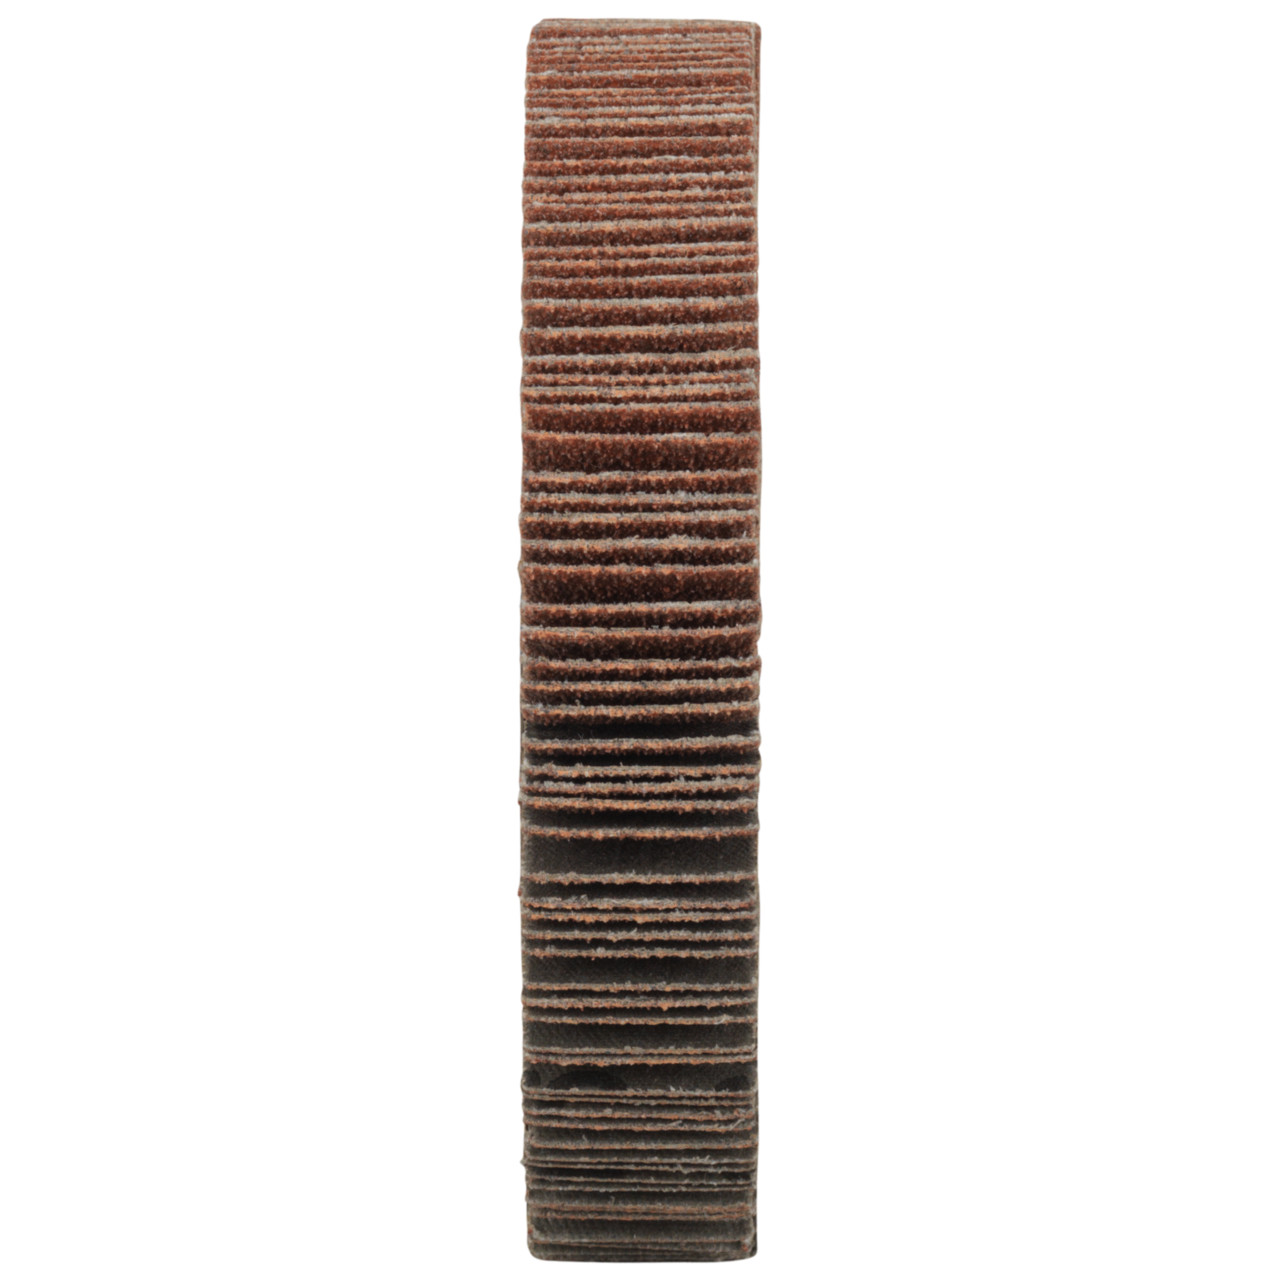 Tyrolit A-P01 C X Ruedas de abanico DxD 125x20 Para acero, metal no férreo y madera, P60, forma: 1LA - (rueda de abanico), Art. 34057521